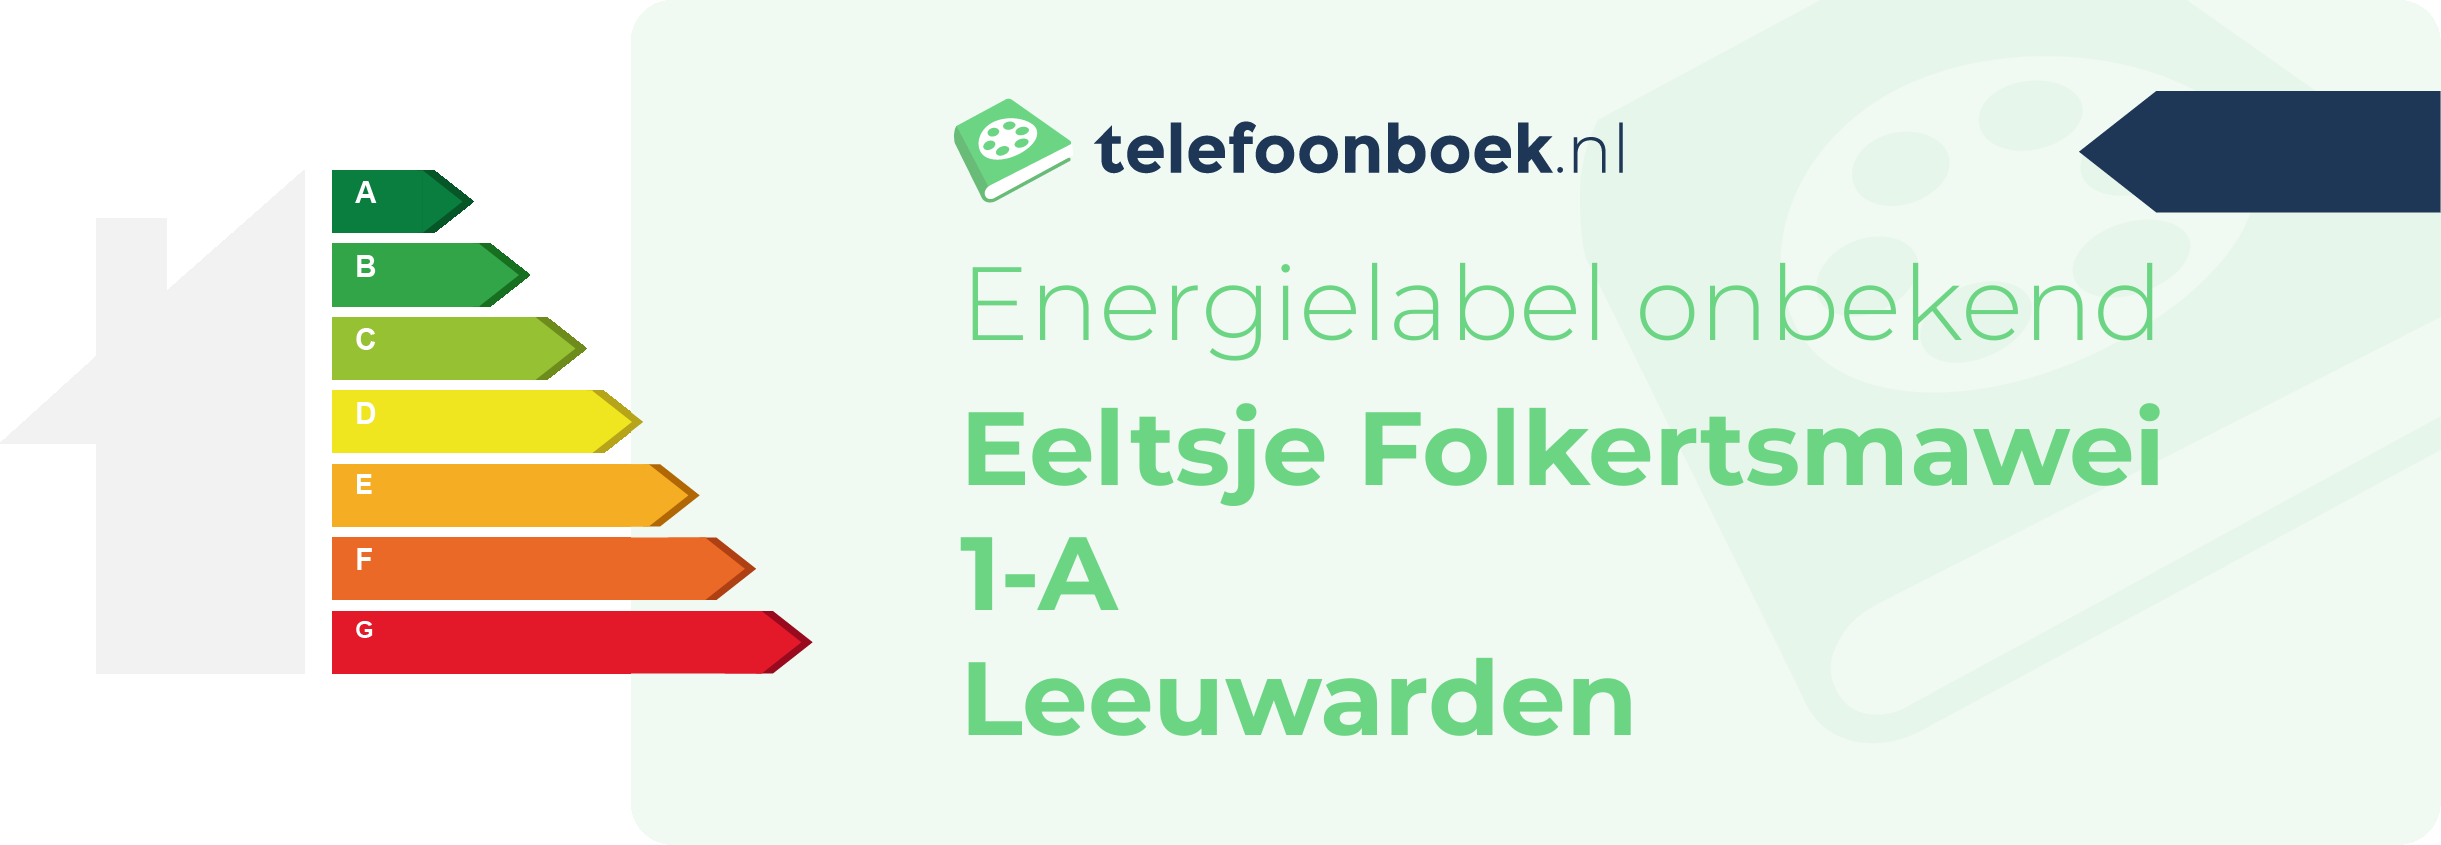 Energielabel Eeltsje Folkertsmawei 1-A Leeuwarden